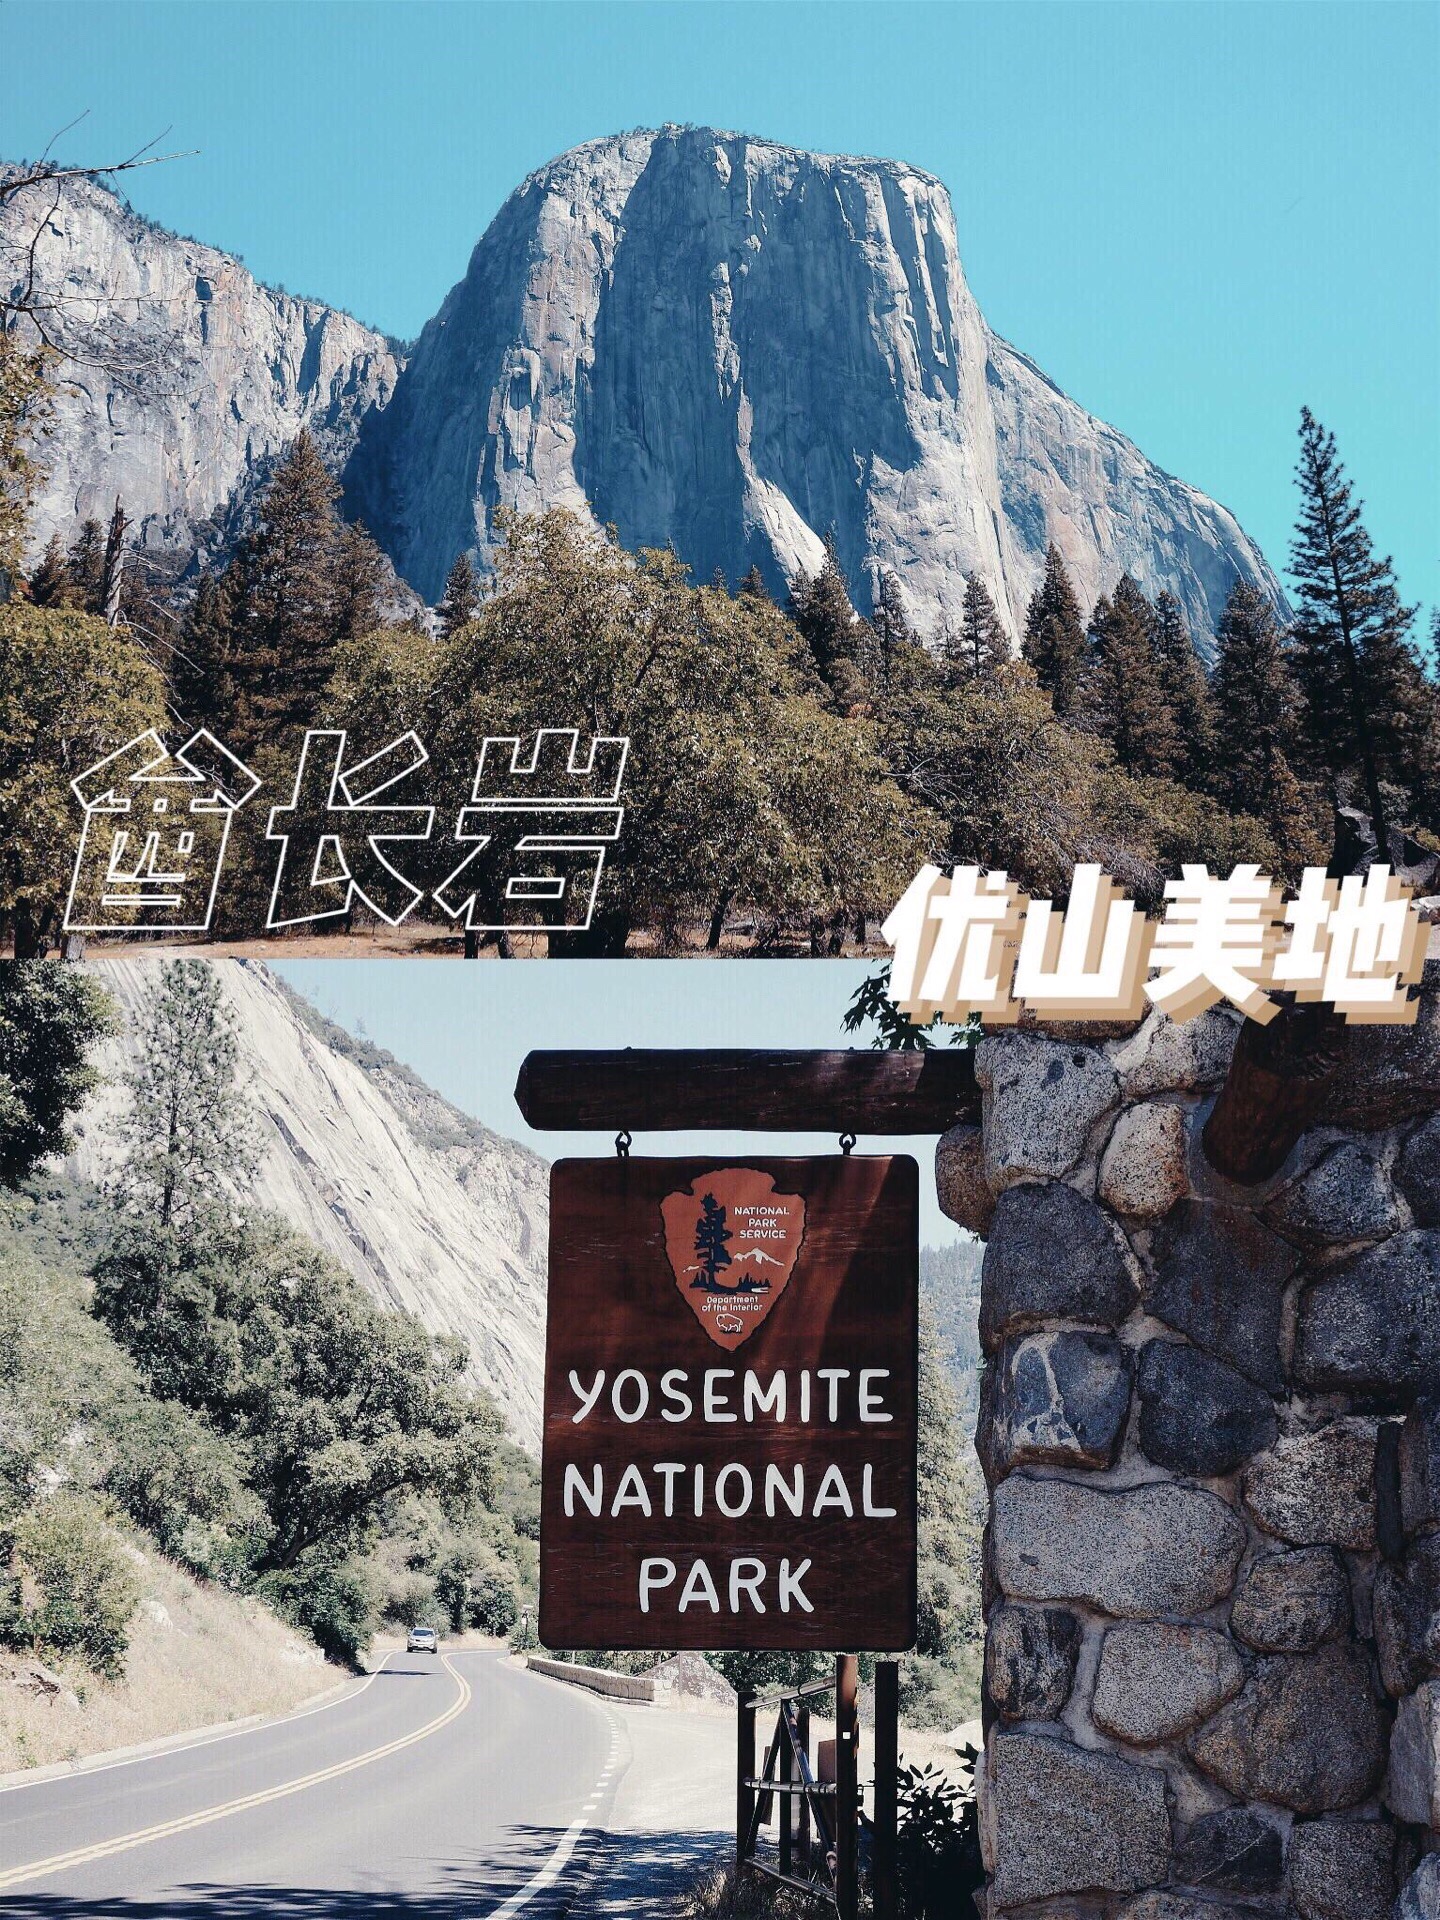 酋长巨石（EI Captain）是全球最大的花岗岩巨型独石，在优山美地的山谷之中拔地而起，高挺雄壮，